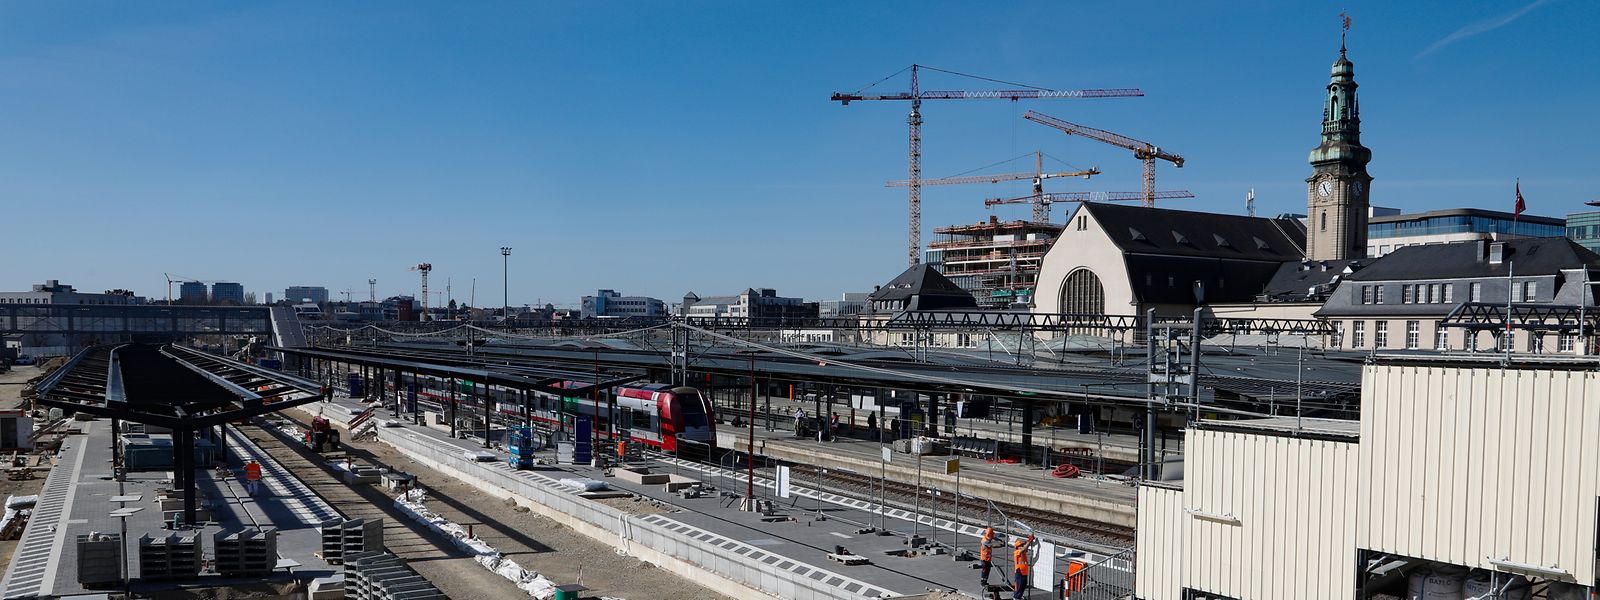 Die Gare centrale erhält zurzeit zwei neue Quais. Von den insgesamt vier zusätzlichen Bahnsteiggleisen ist eines bereits seit Ende 2019 in Betrieb.